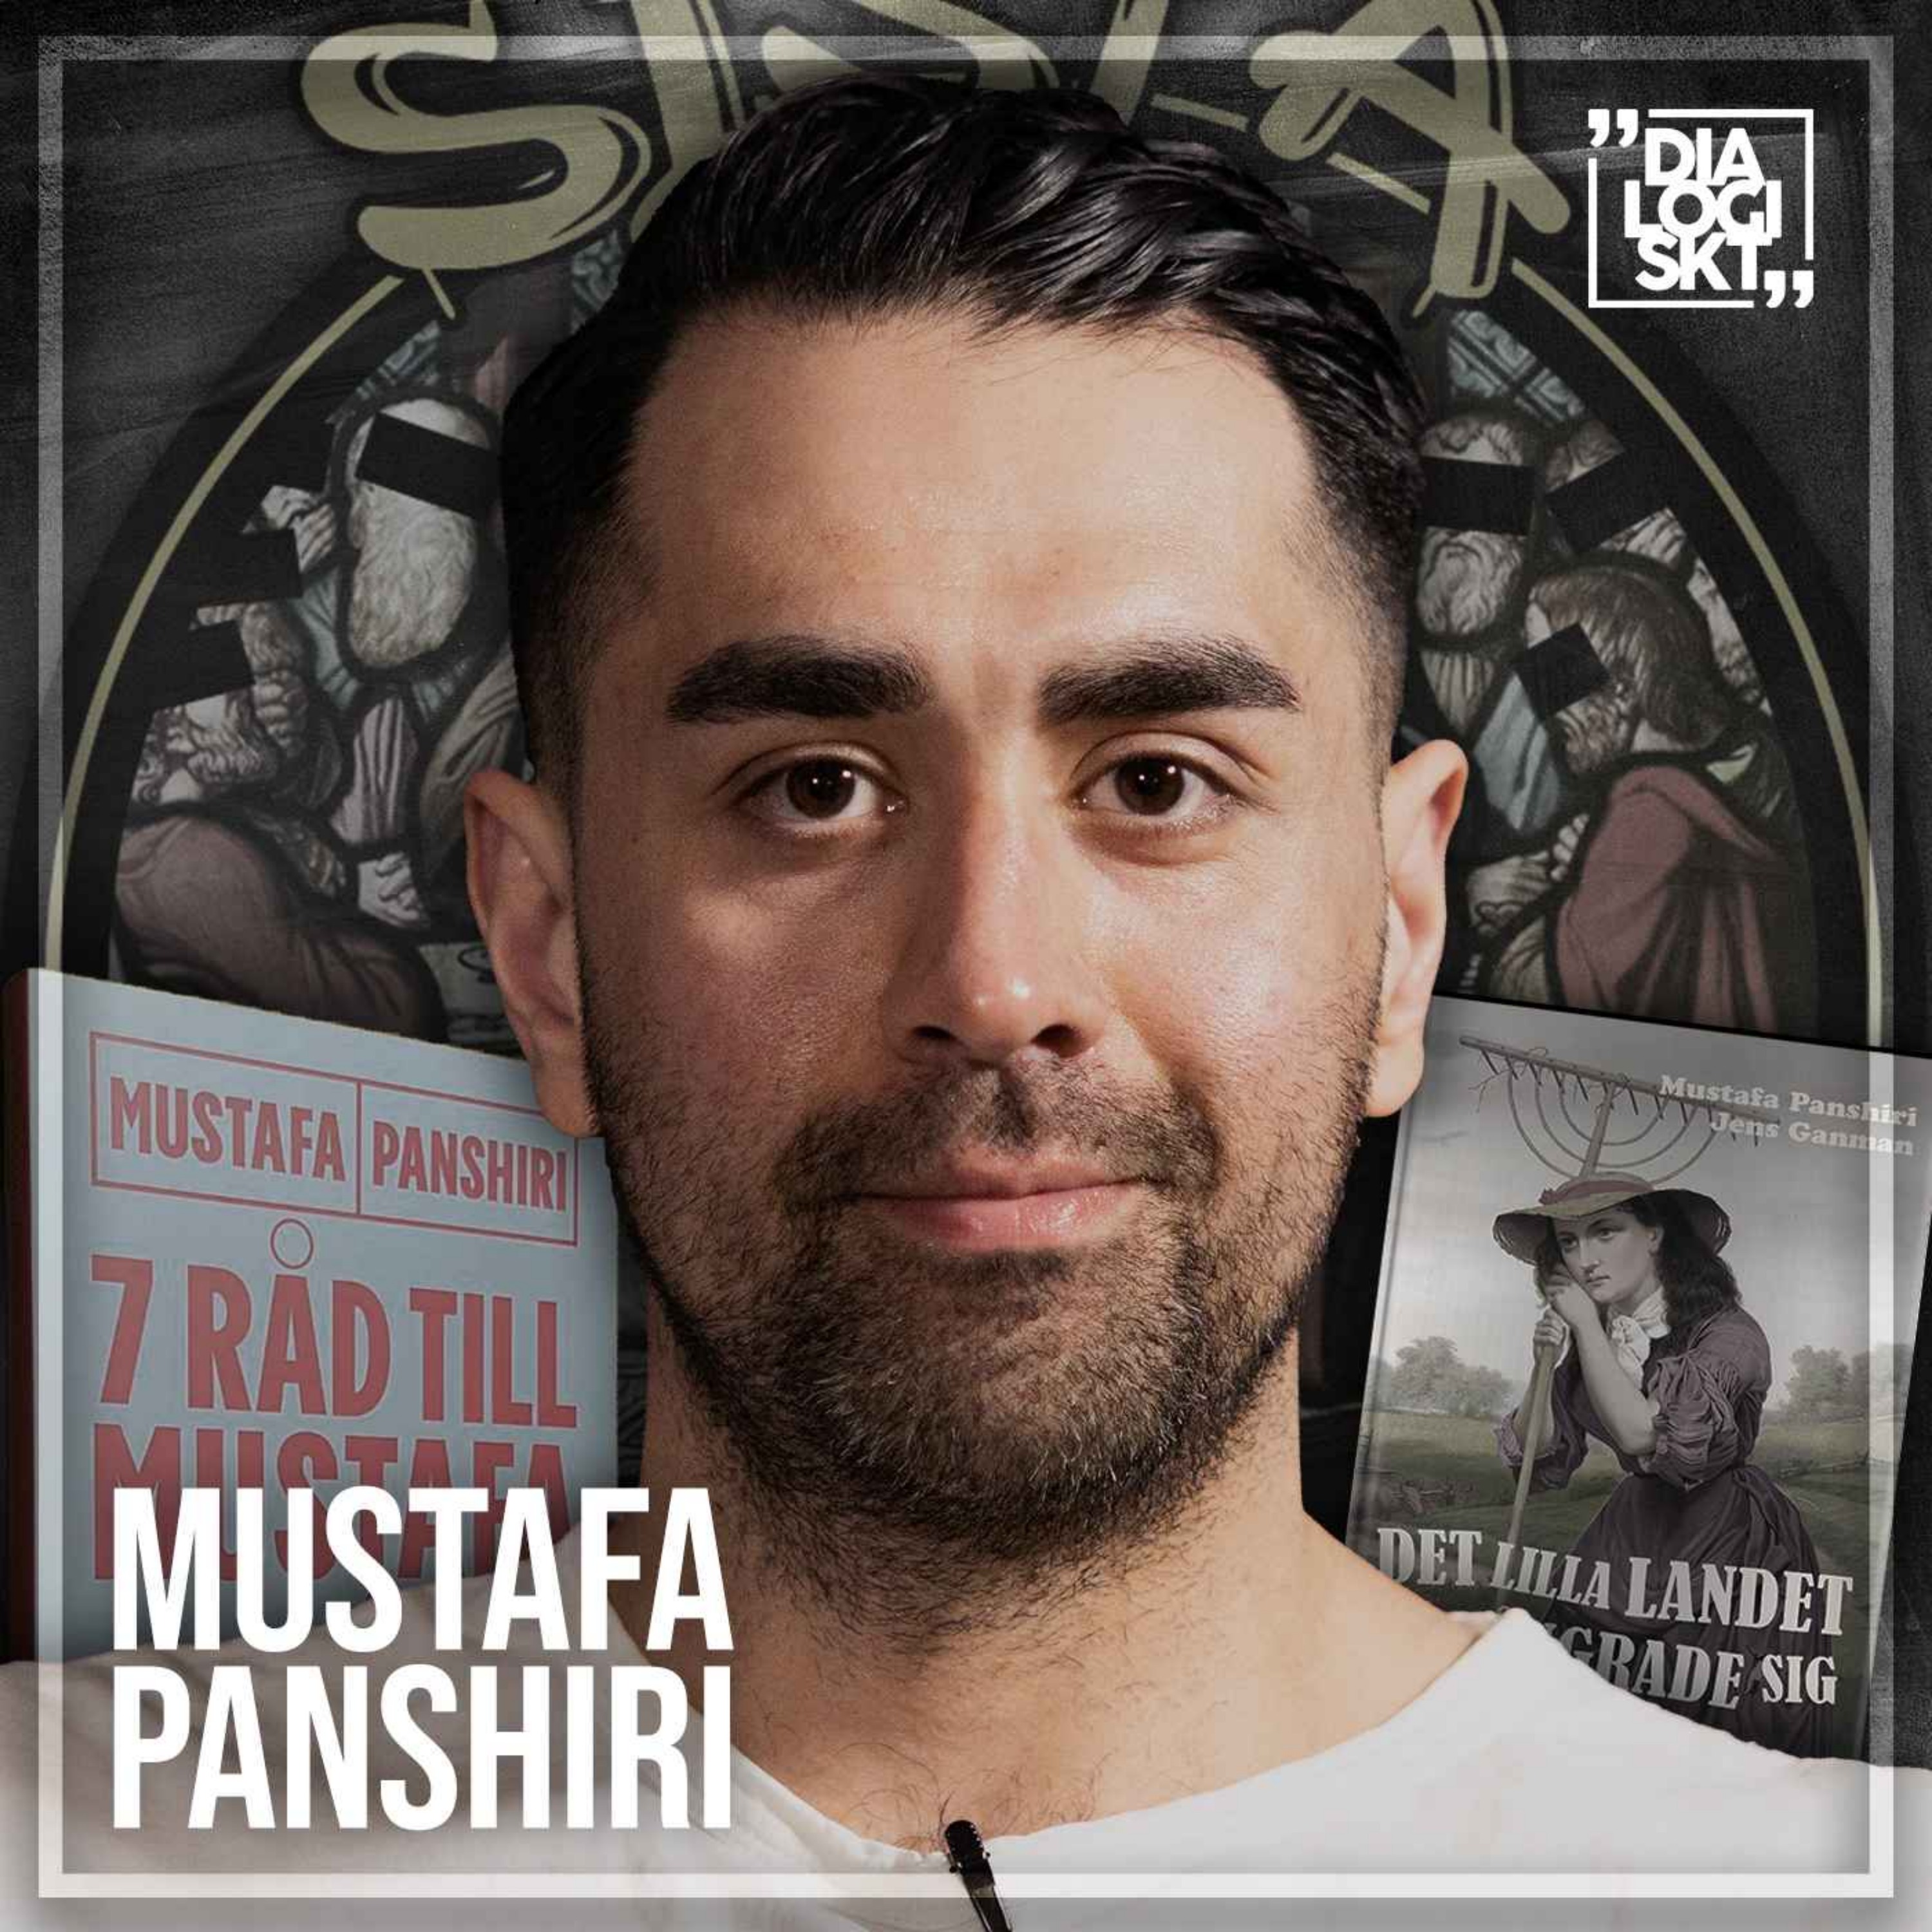 cover art for #149 Mustafa Panshiri ”När Sverige ångrade sig” 